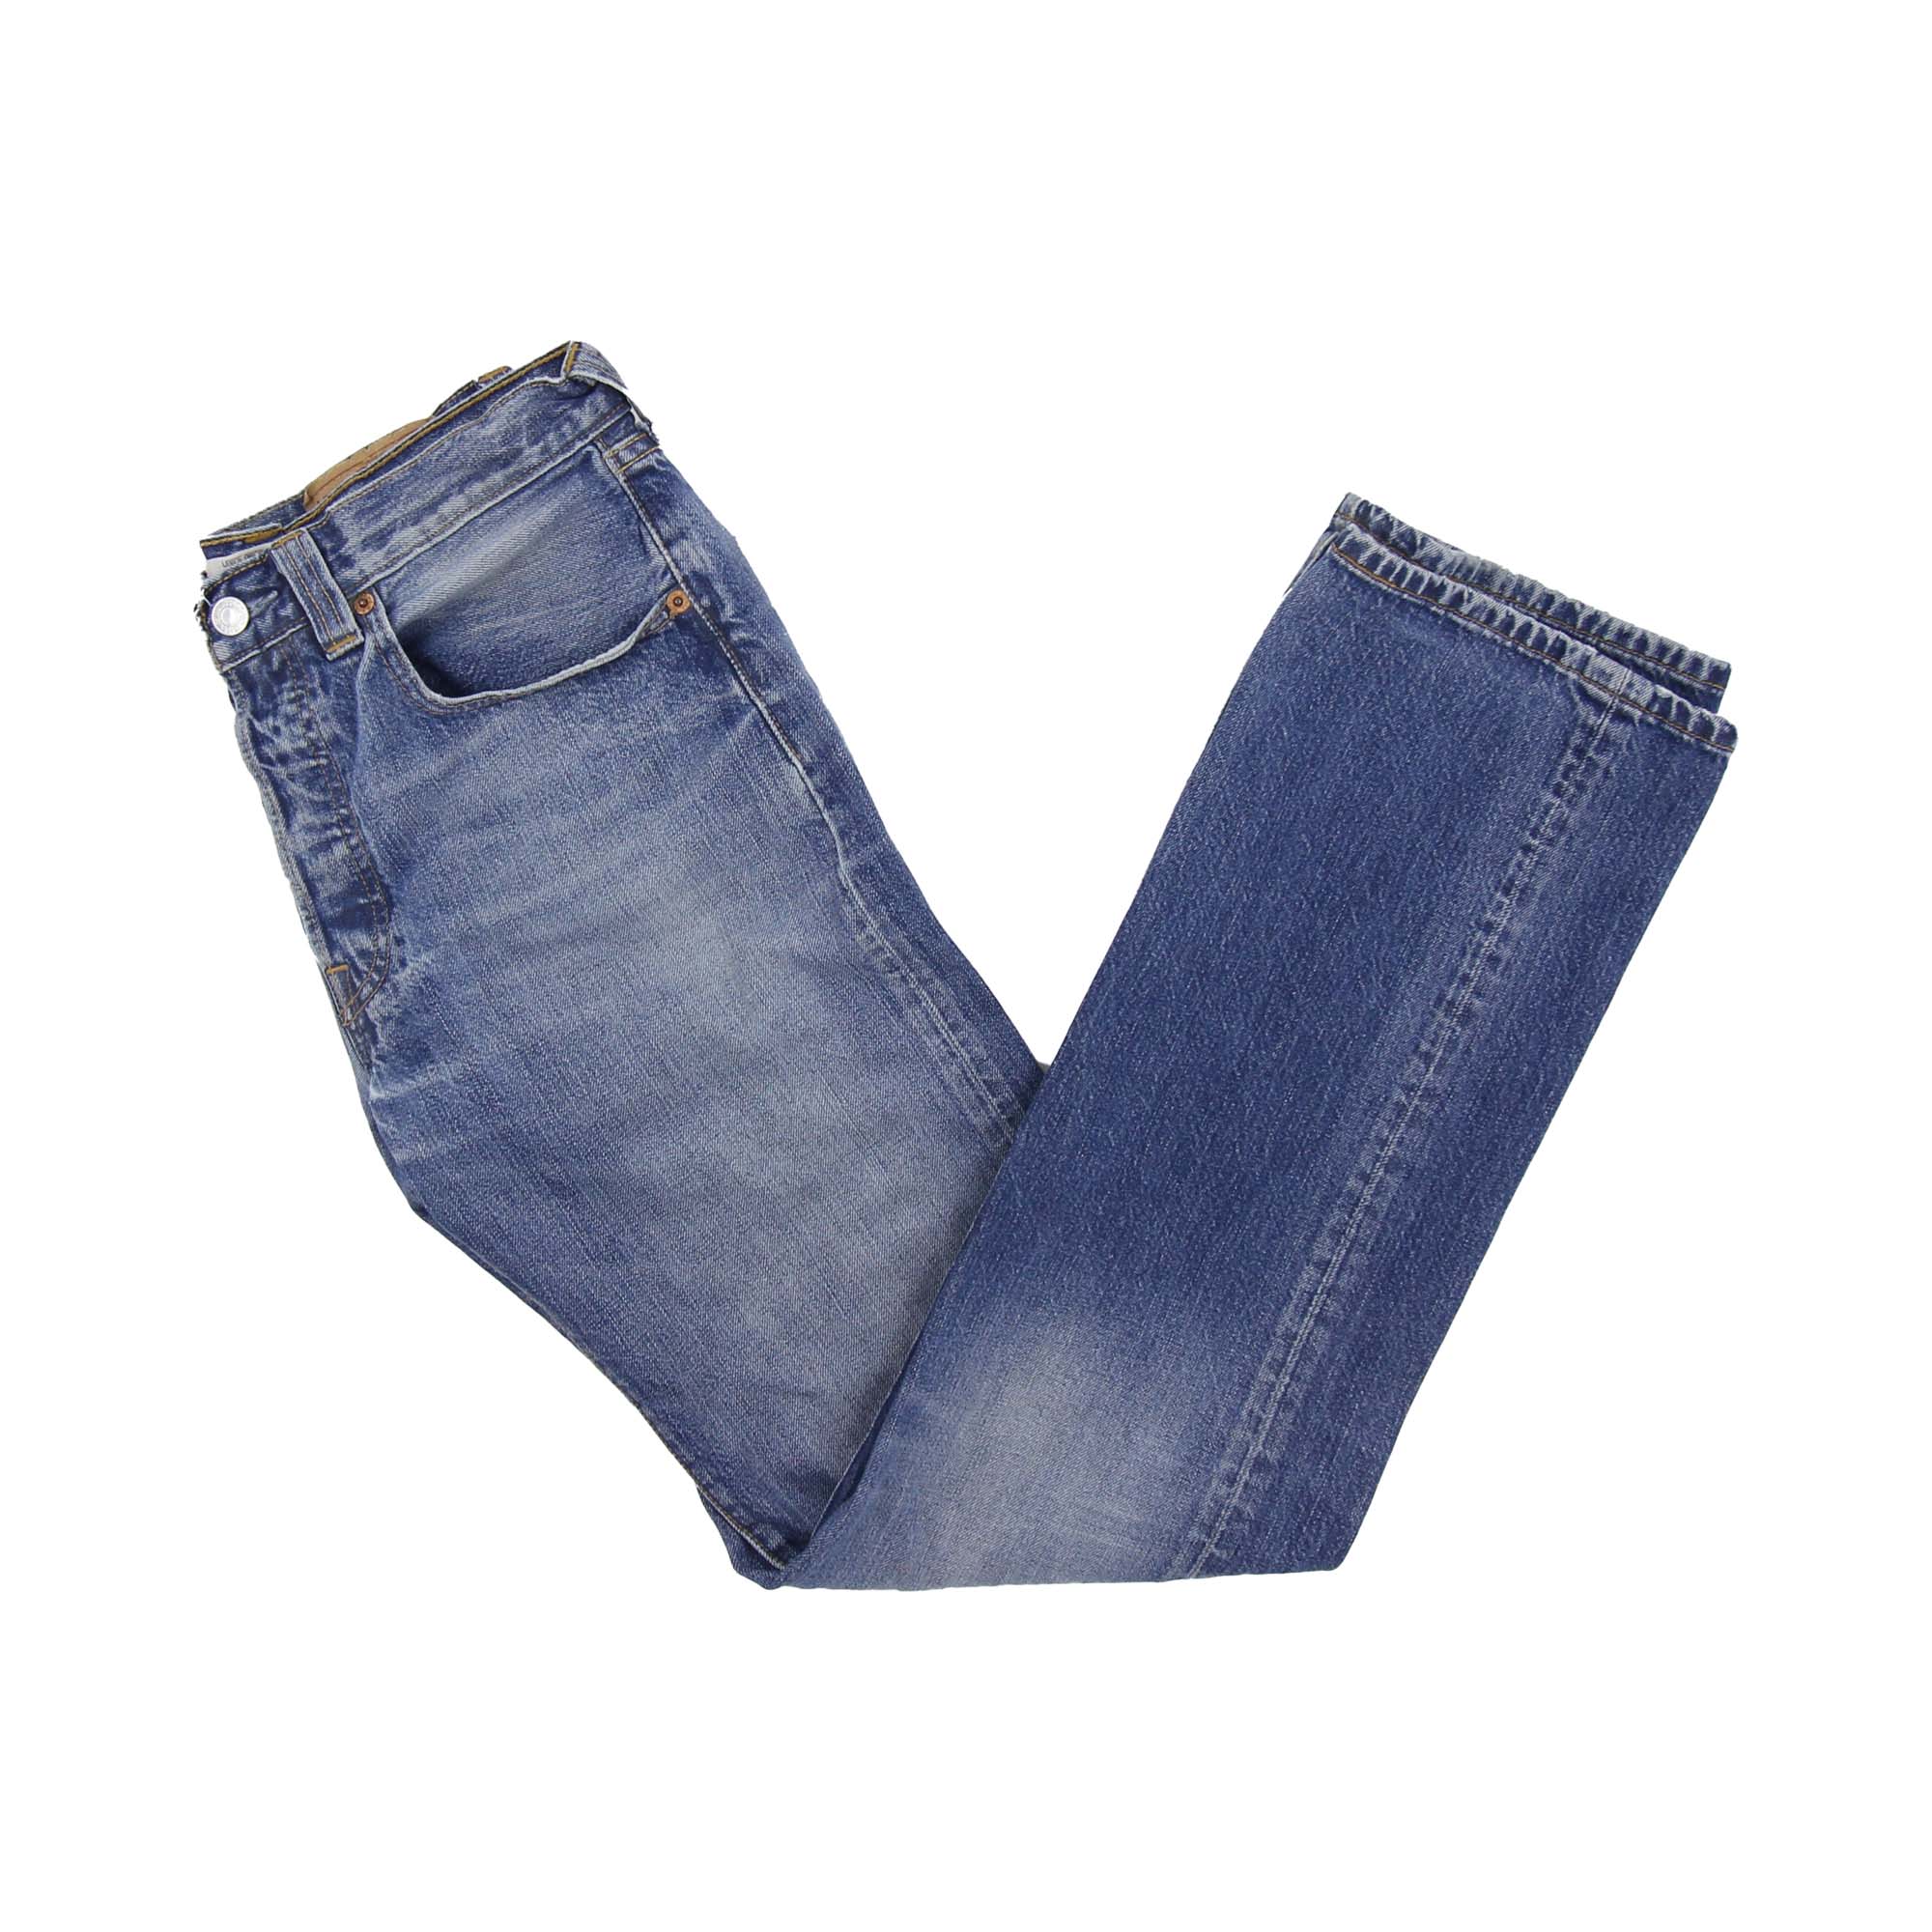 Levi's 501 Denim Jeans - W31 L34